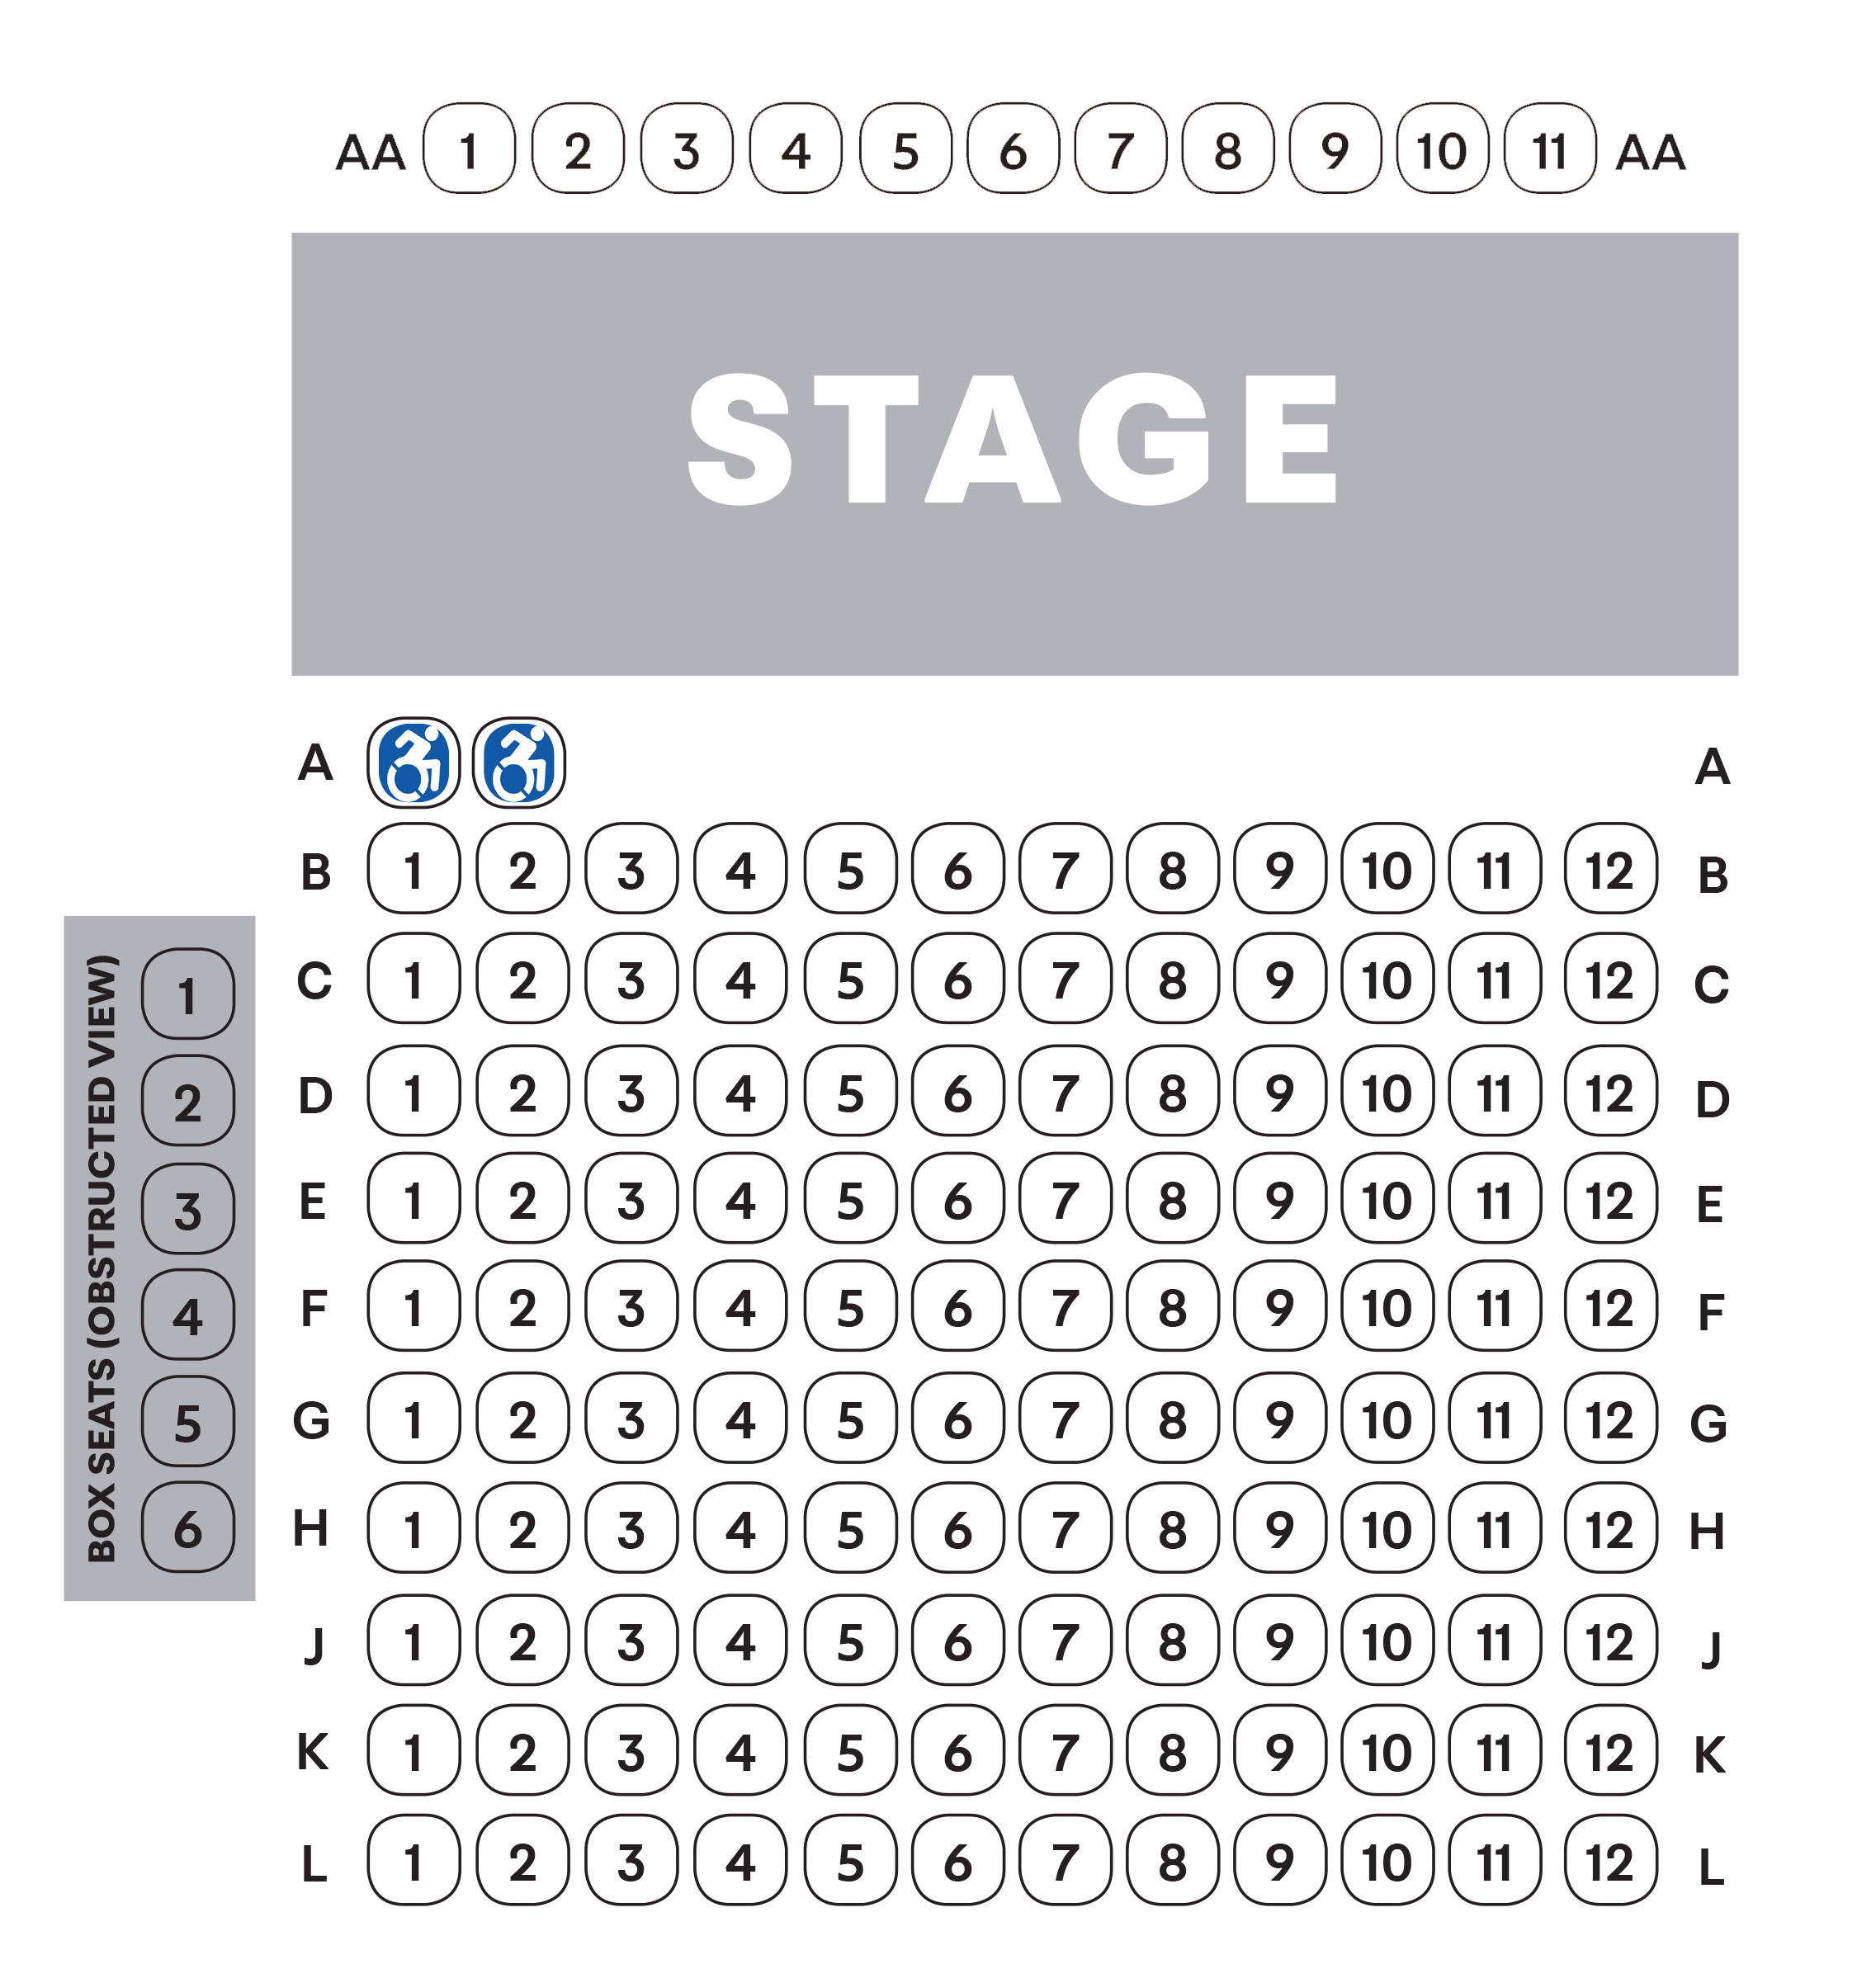 Hudson Valley Shakespeare Festival Seating Chart